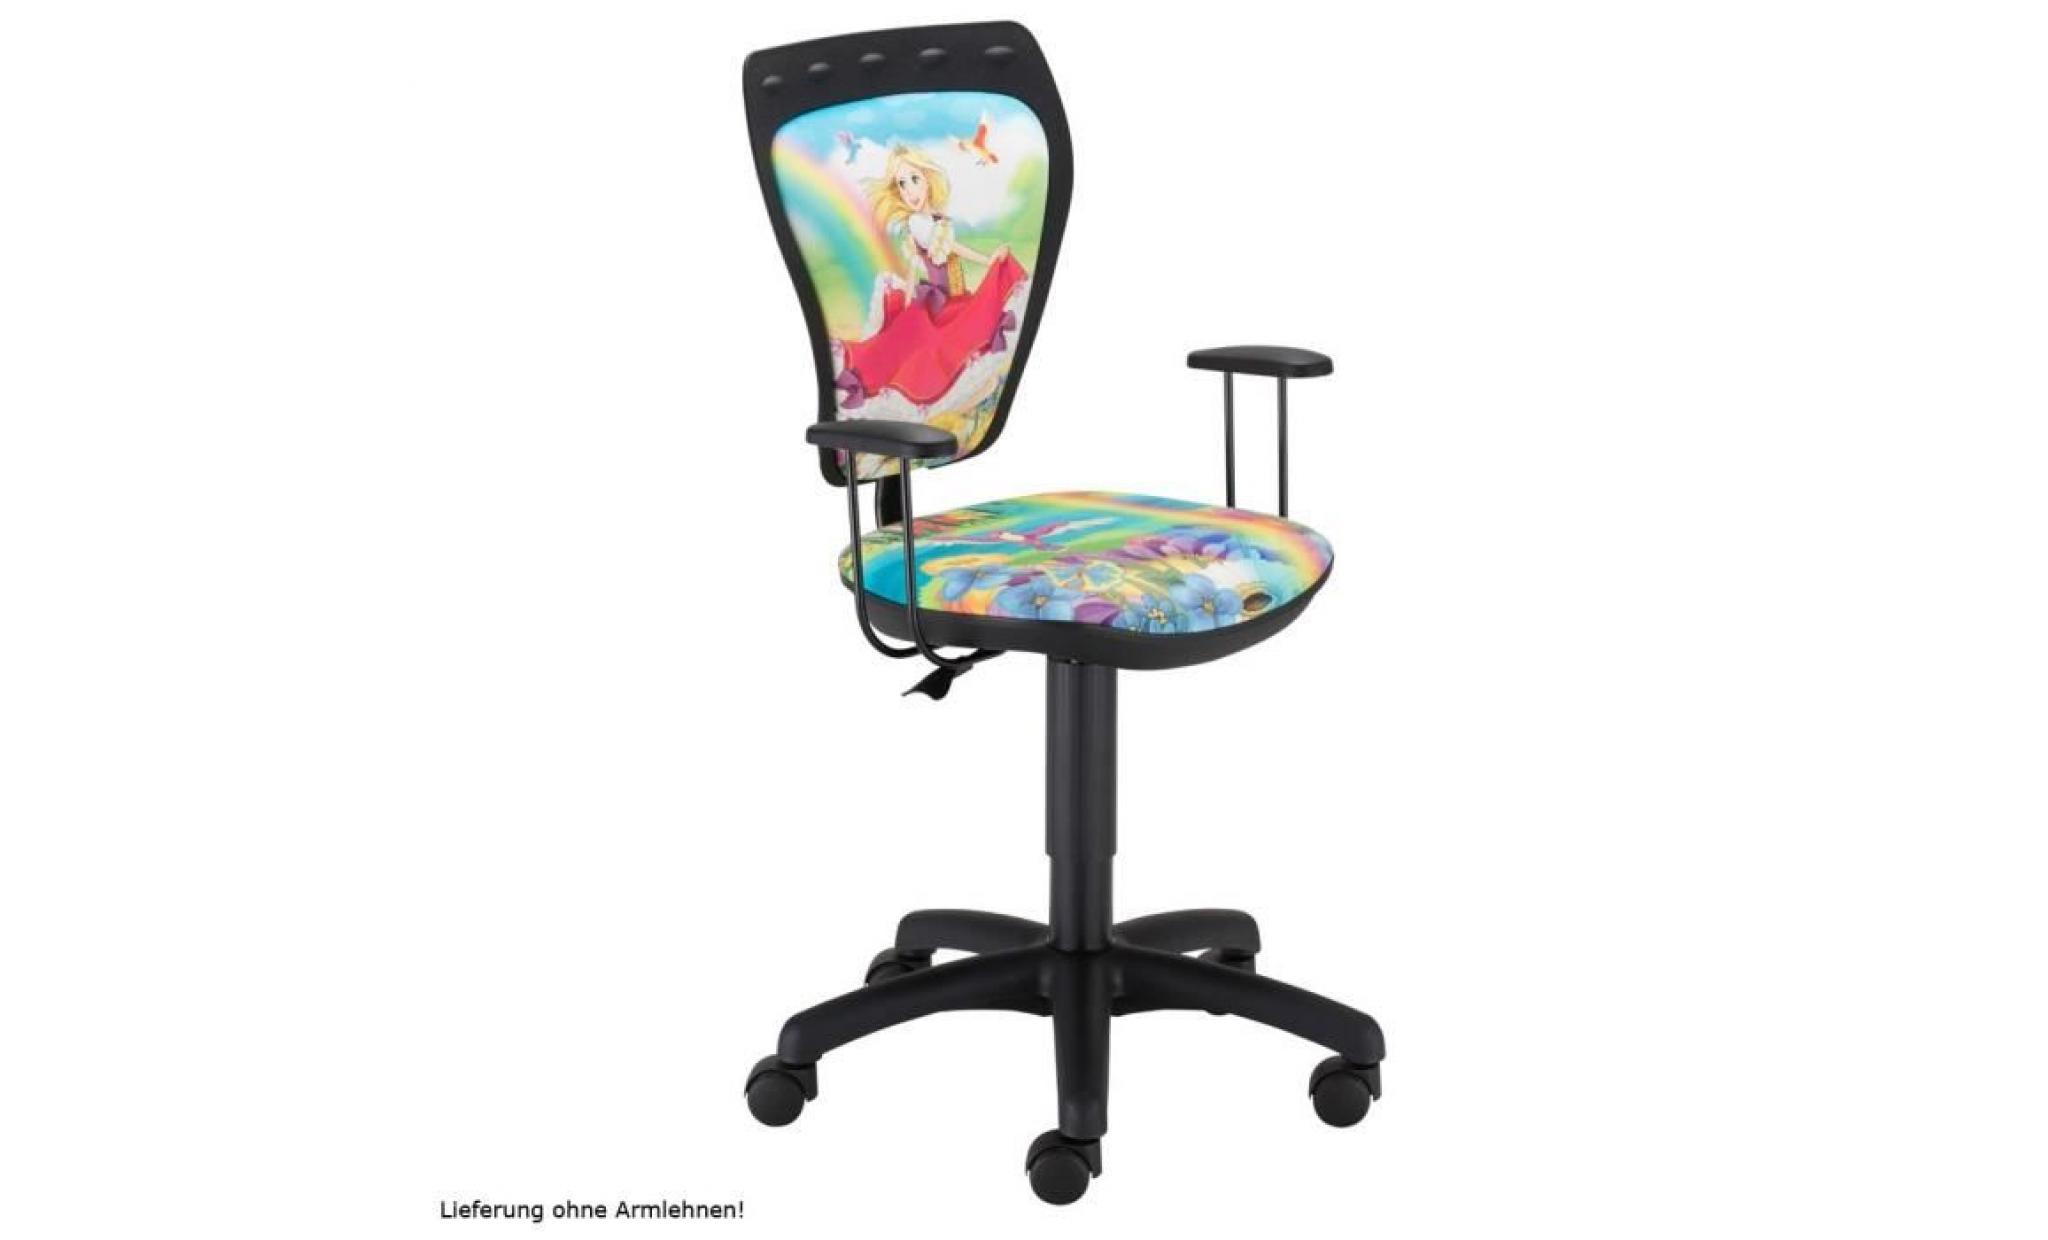 siège tournant chaise de bureau princesse enfants chambre coloré maison ts22 rts